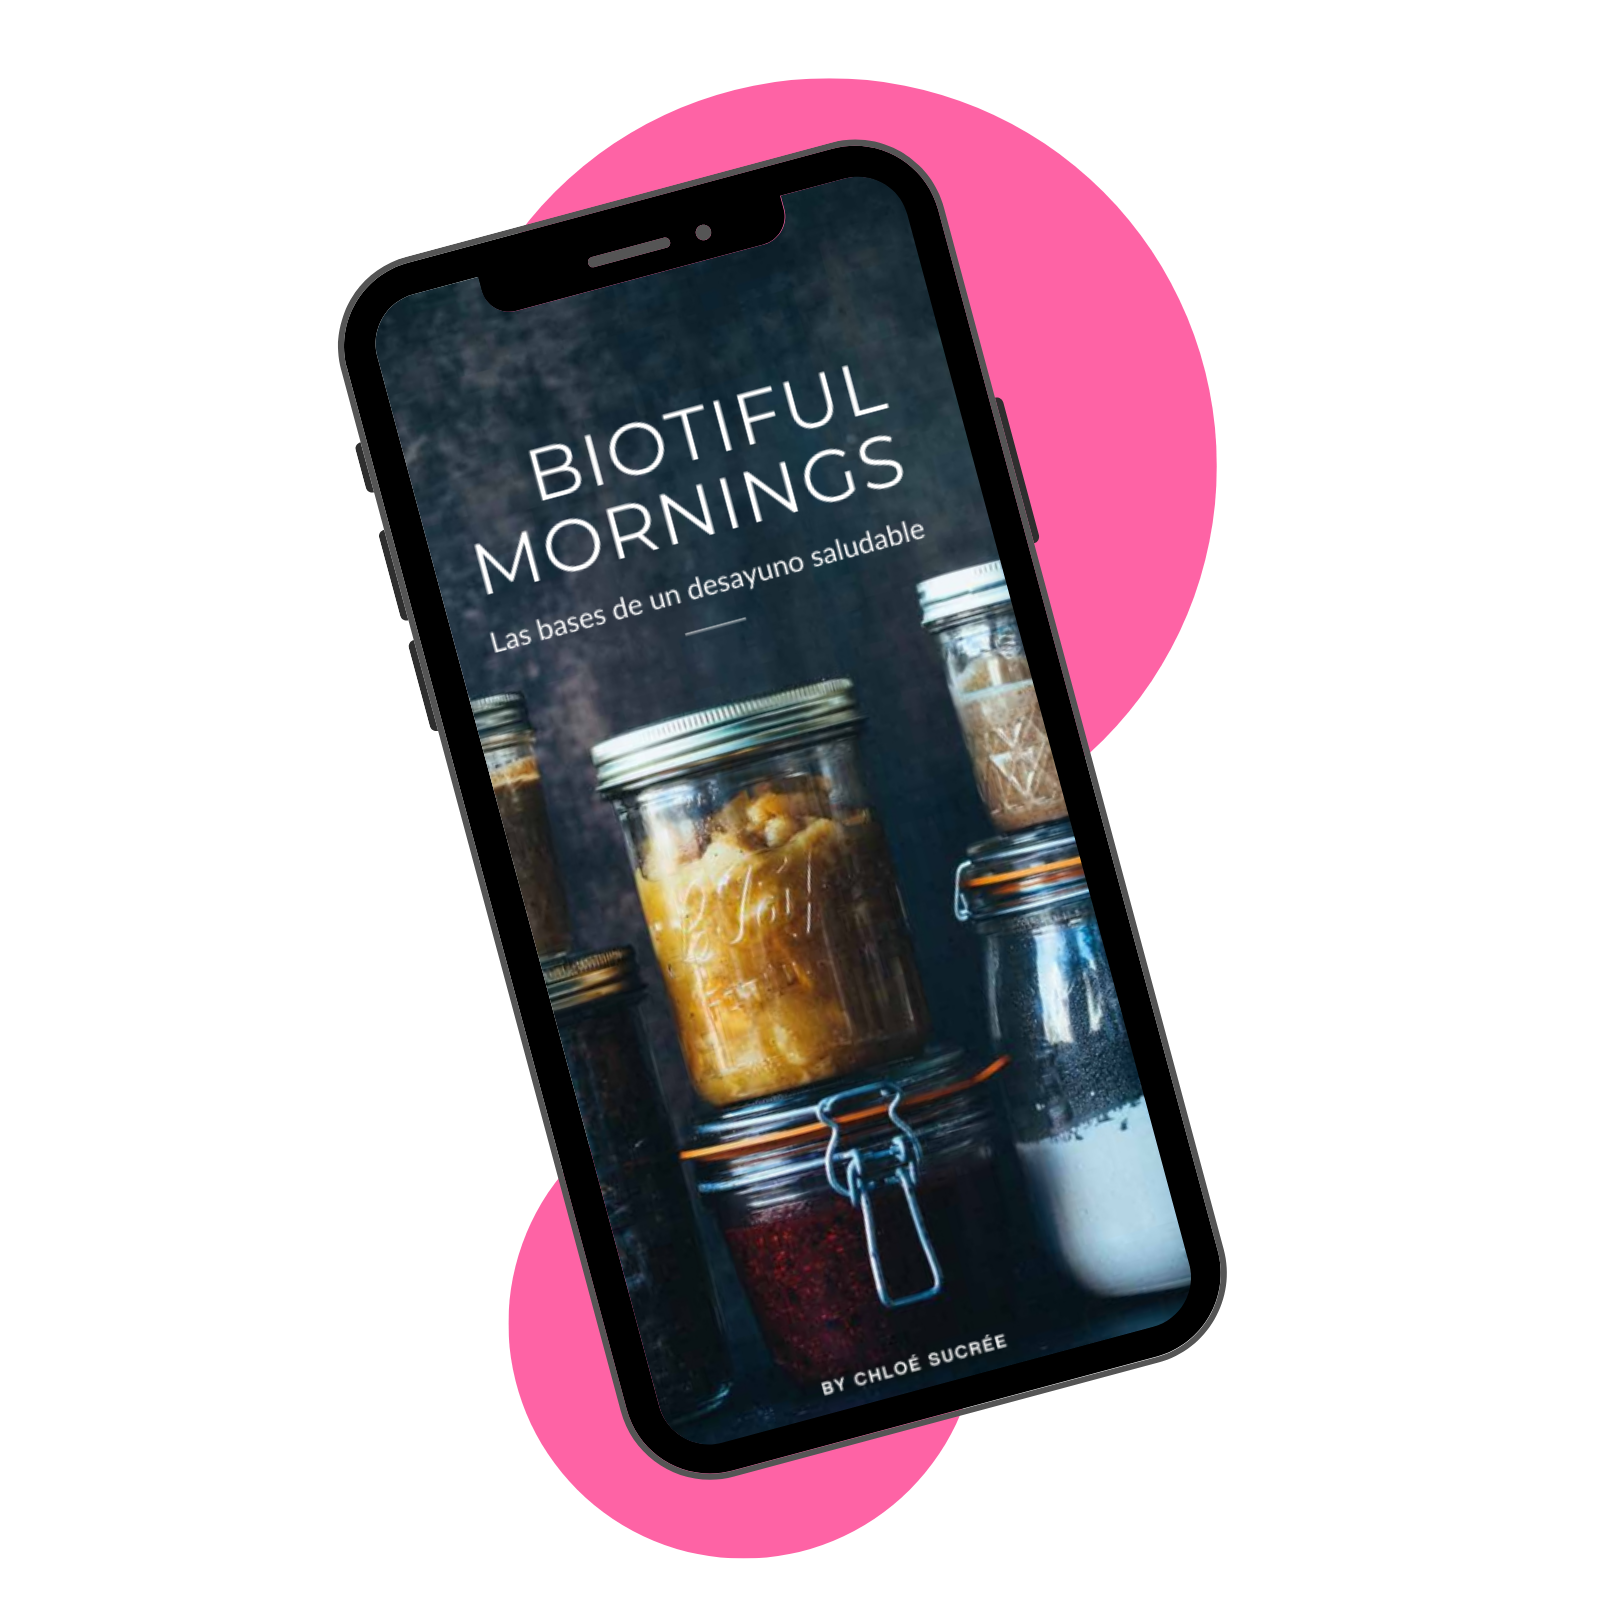 Imagen de un móvil con la portada del ebook desayunos.